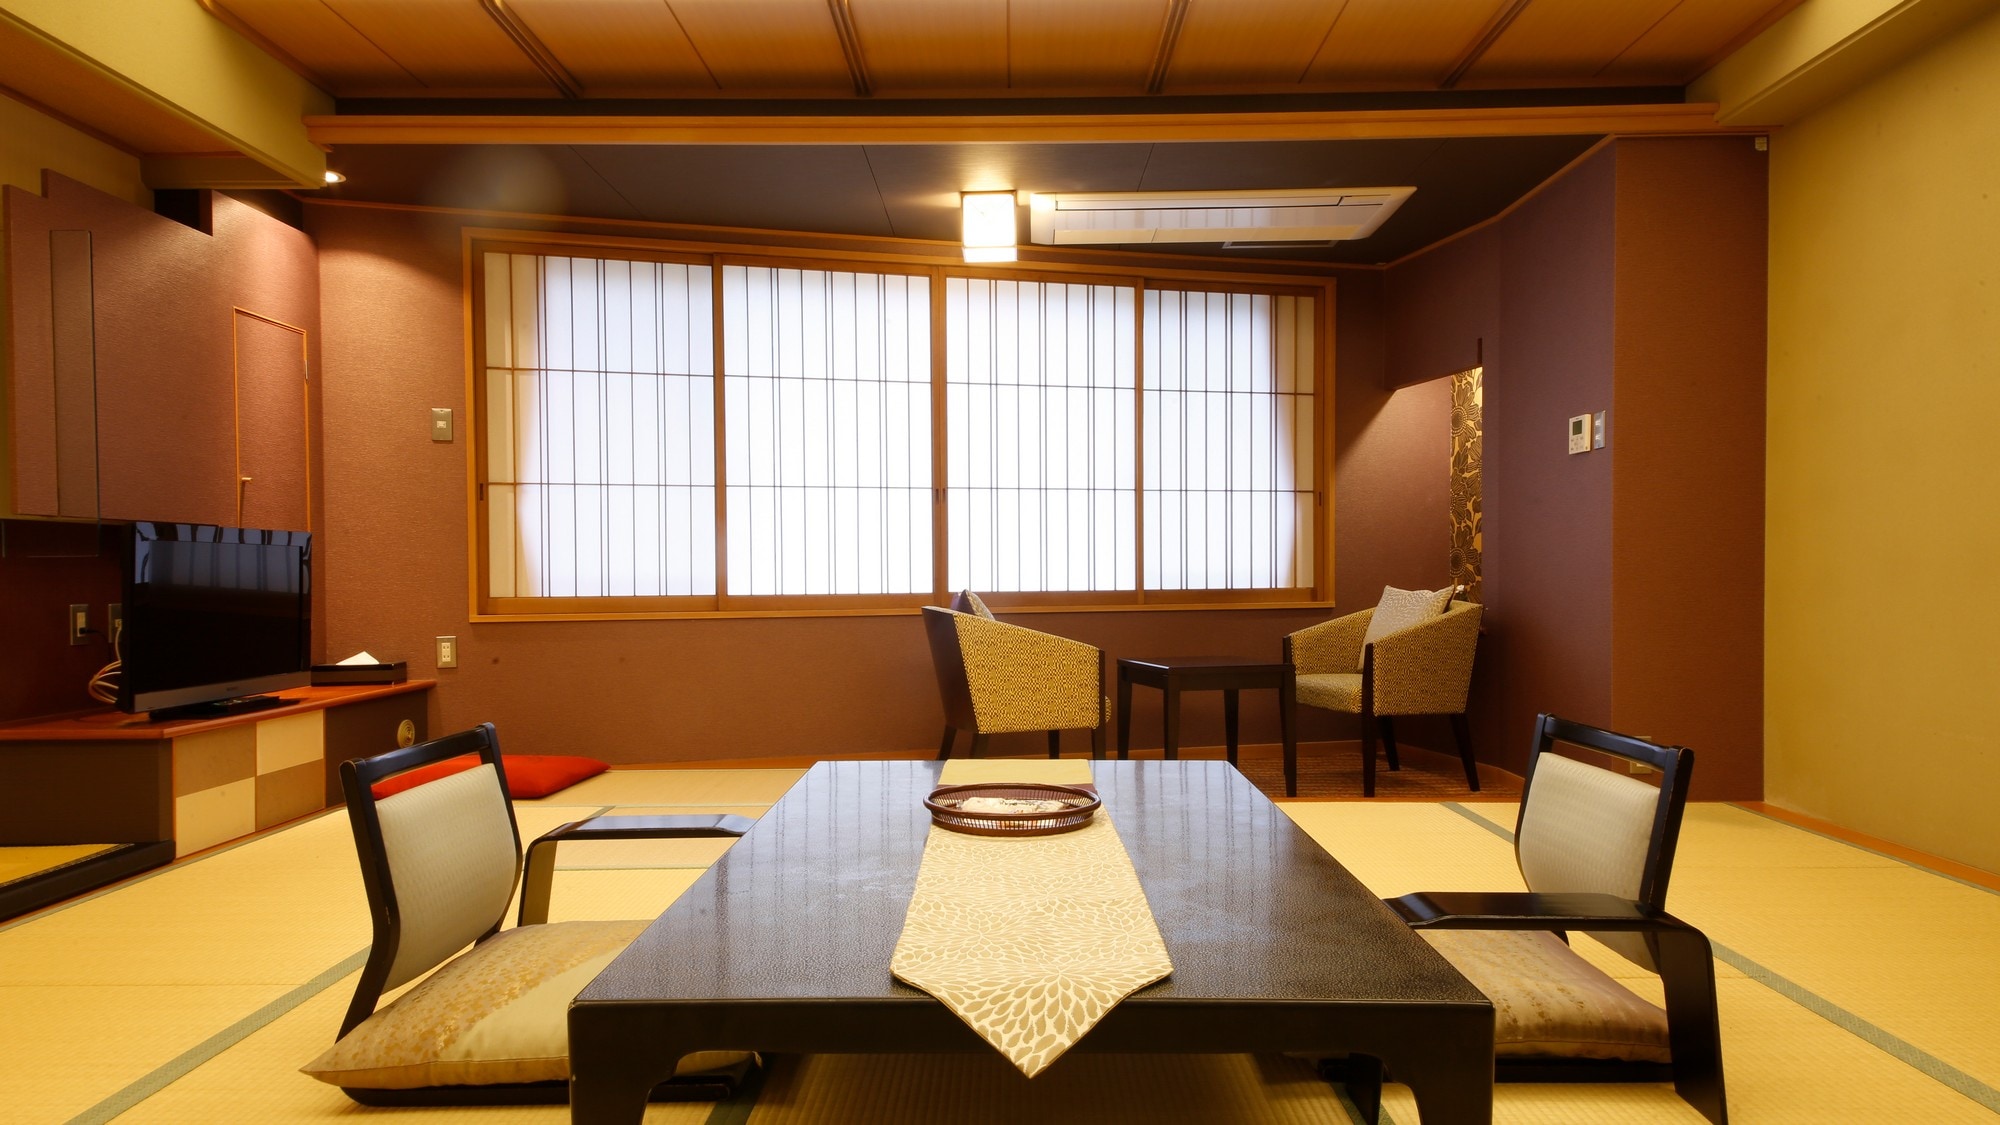 ห้องพักหรูหราสไตล์ญี่ปุ่นที่หรูหราทันสมัย <ห้อง Checkered> เราได้จัดขอบกว้างที่กลายเป็นพื้นที่ปูพรม